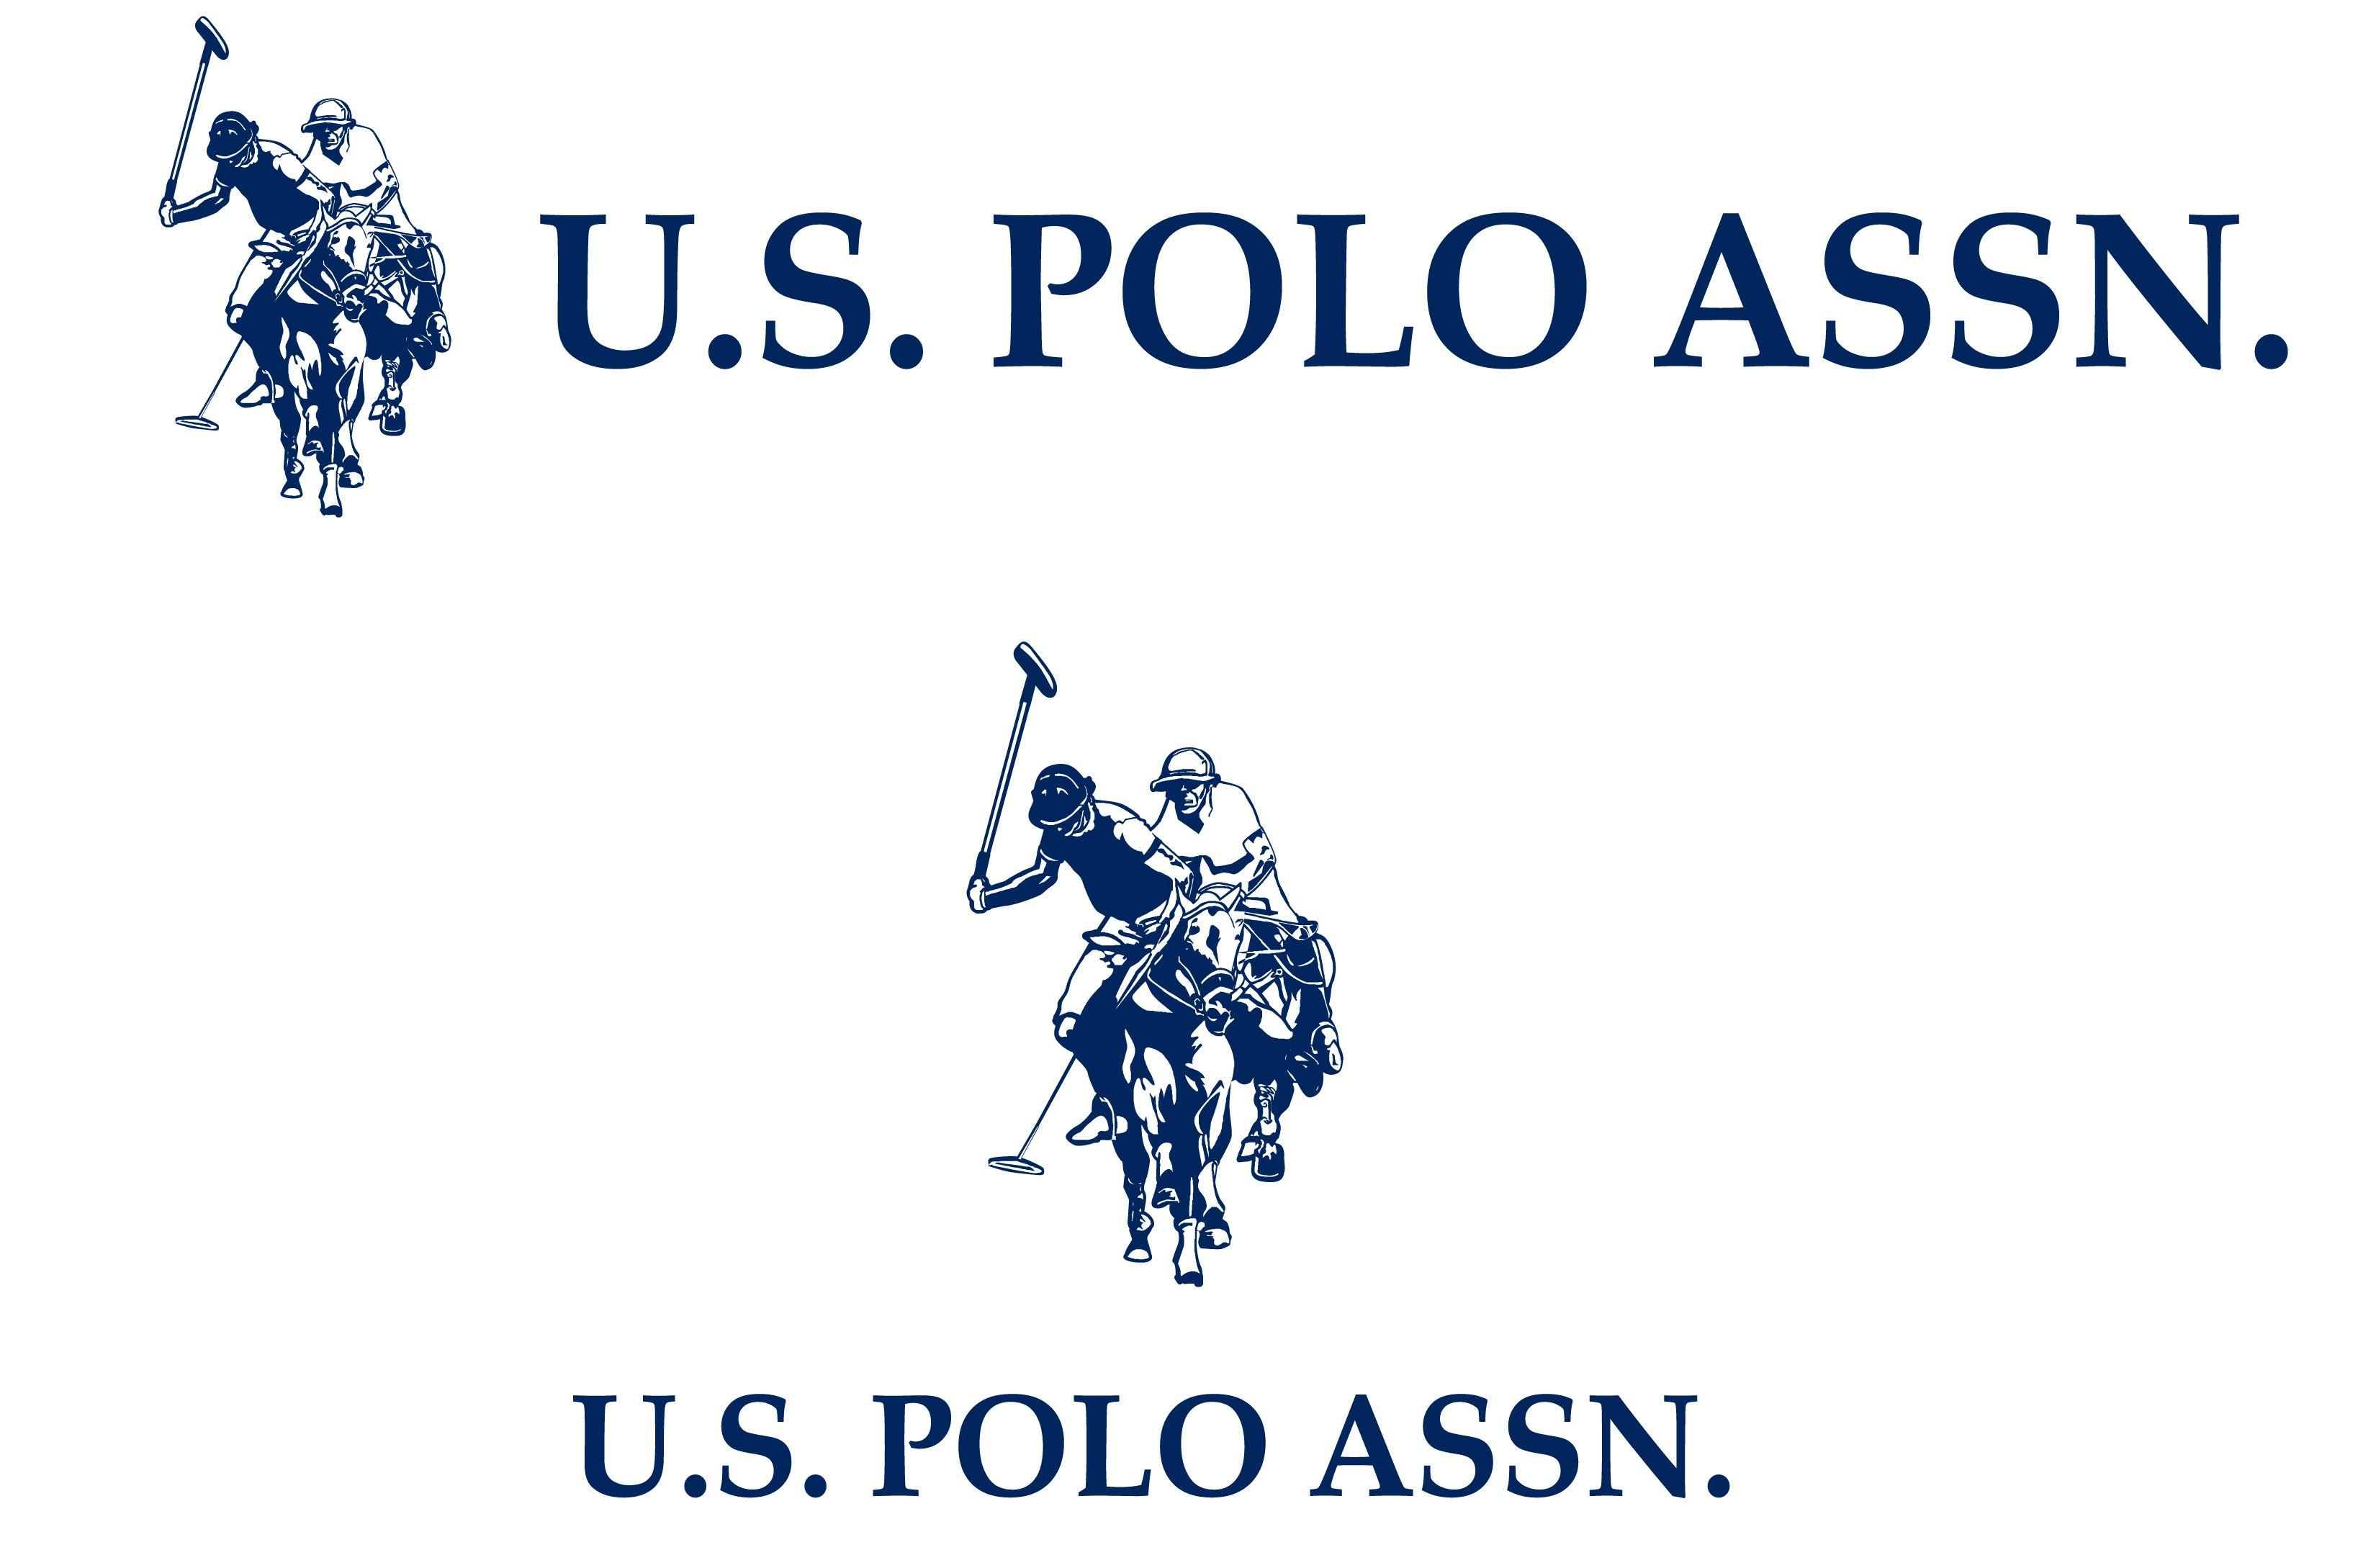 U.S. Polo Assn. Polo, Logos